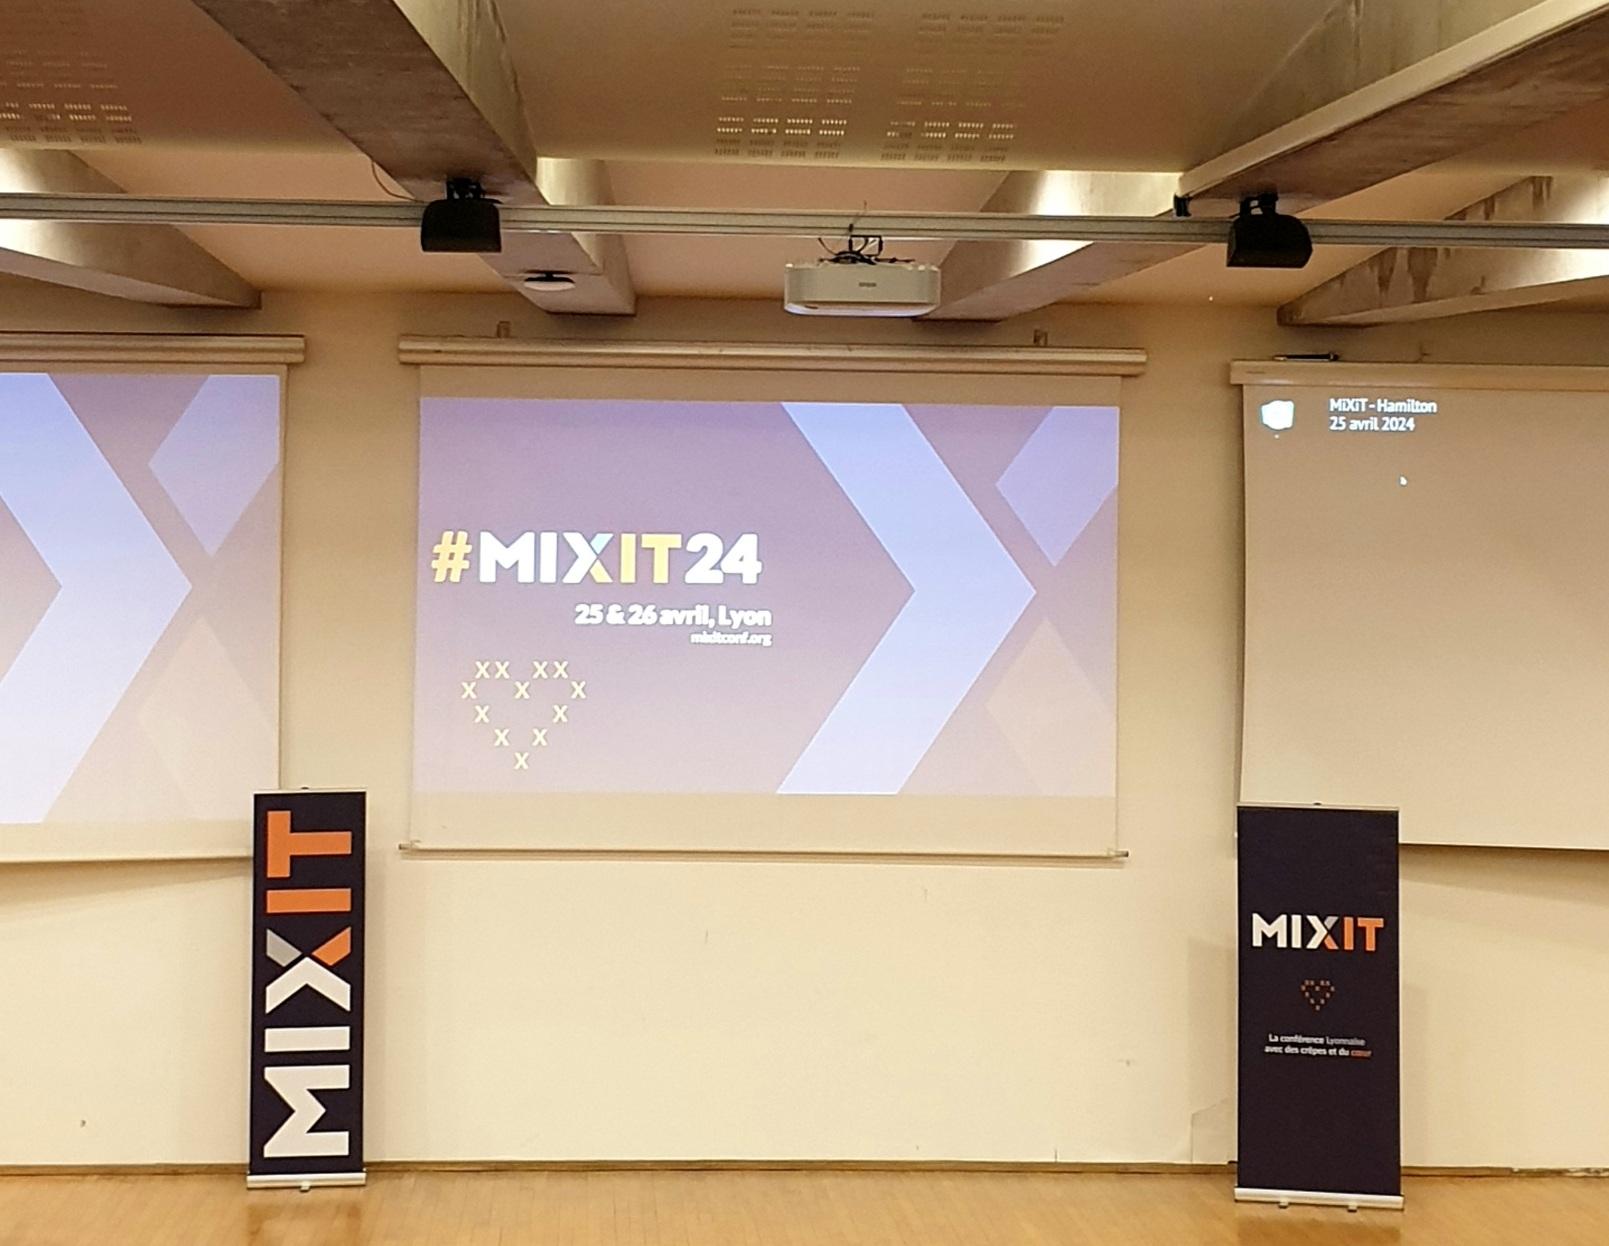 Ecran d'un amphithéatre sur lequel il est projeté : #mixit24 25 & 26 avril Lyon